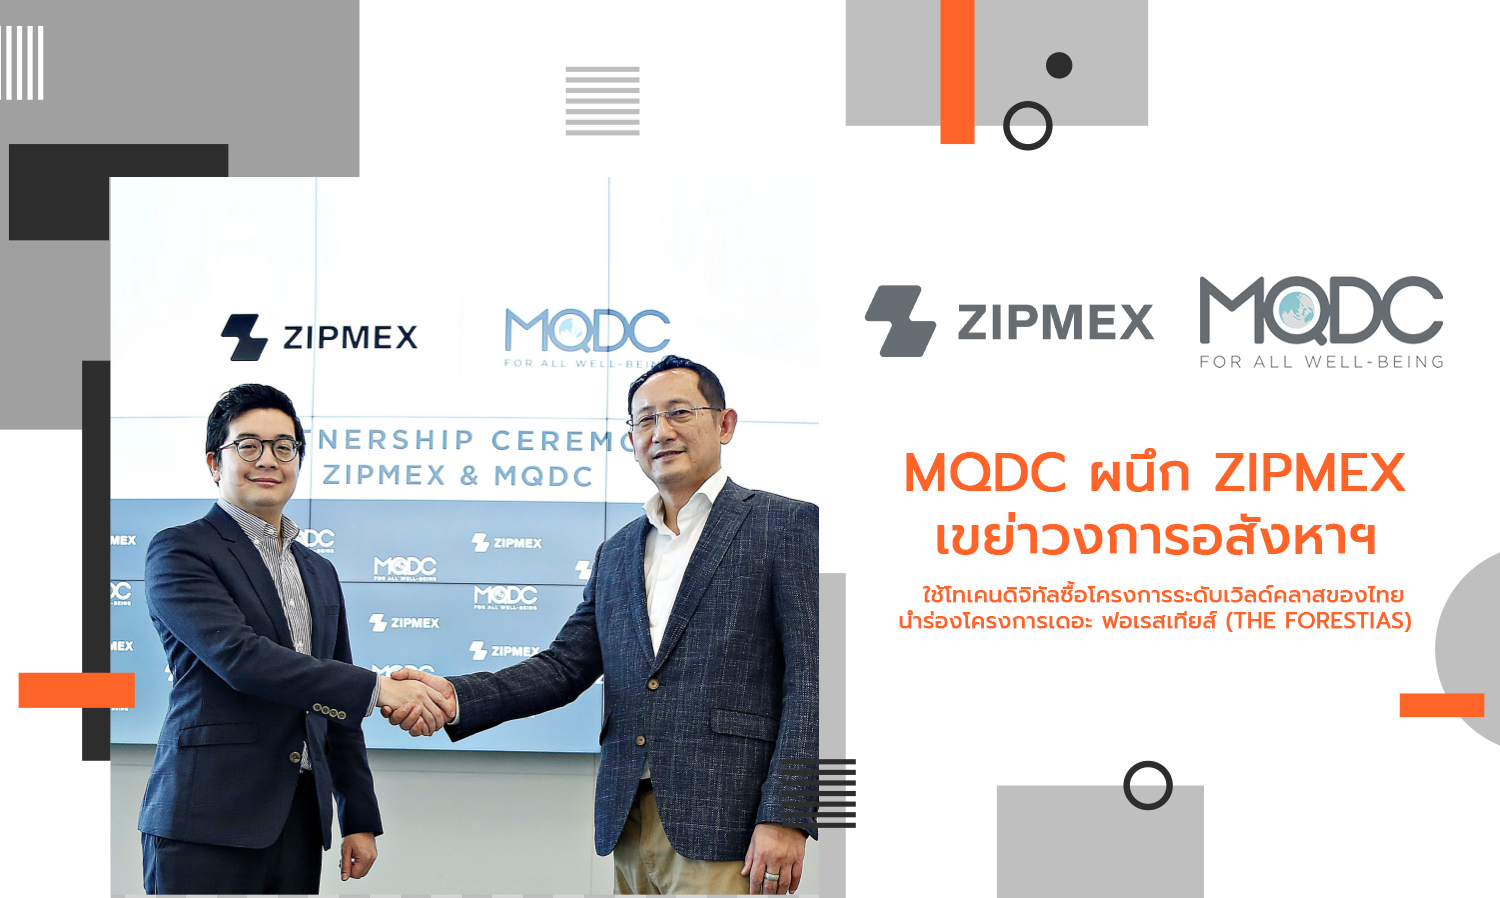 MQDC ผนึก Zipmex เขย่าวงการอสังหาฯ   ใช้โทเคนดิจิทัลซื้อโครงการระดับเวิลด์คลาสของไทย  นำร่องโครงการเดอะ ฟอเรสเทียส์ (The Forestias)  